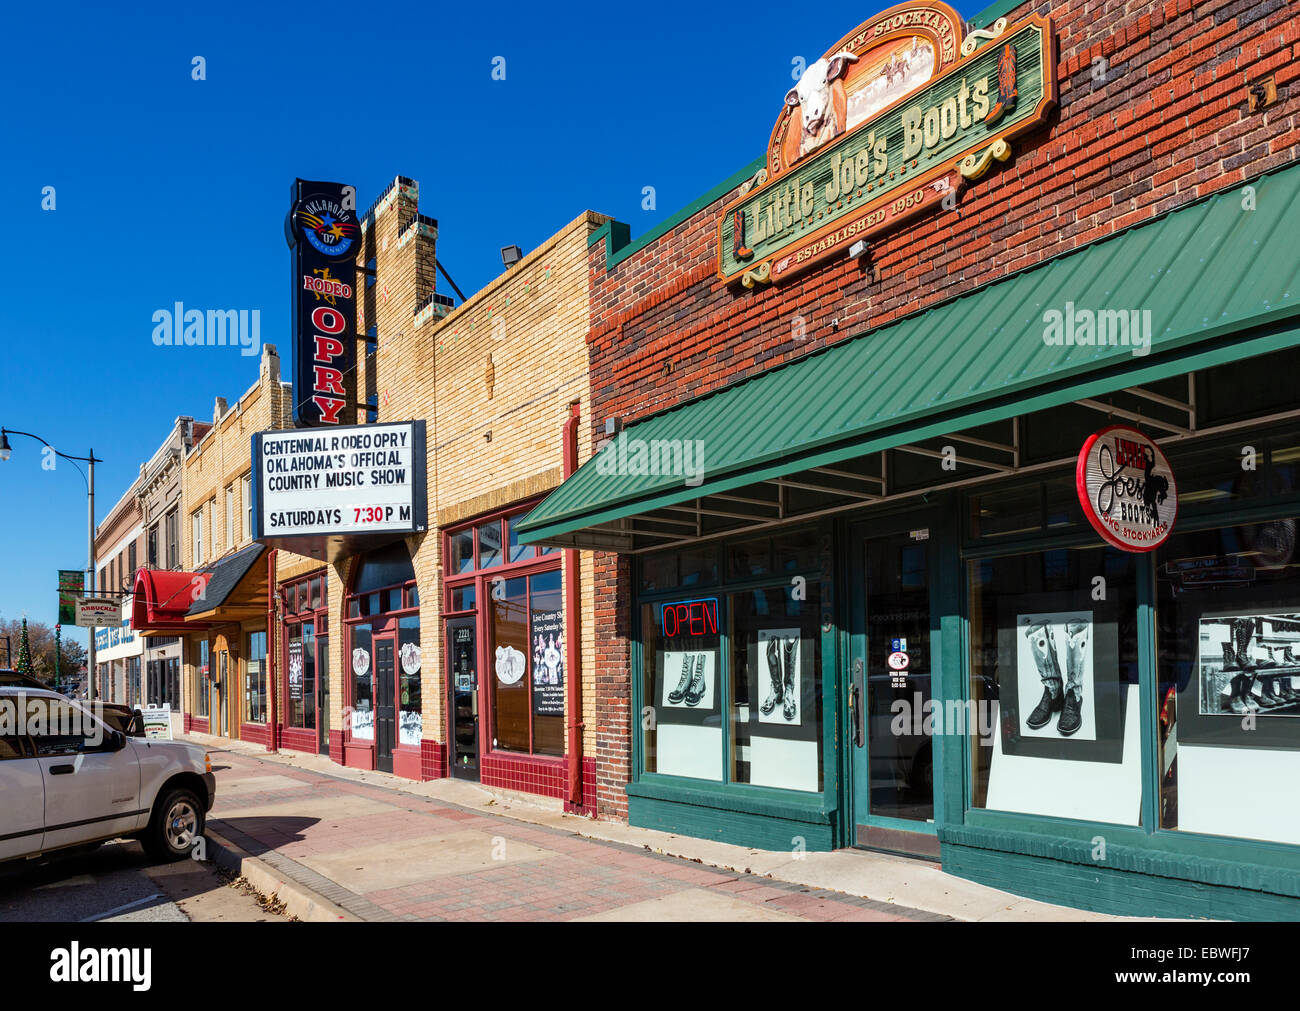 Negozi e bar su Exchange Avenue nello storico quartiere di piazzale di stoccaggio, Oklahoma City, OK, STATI UNITI D'AMERICA Foto Stock